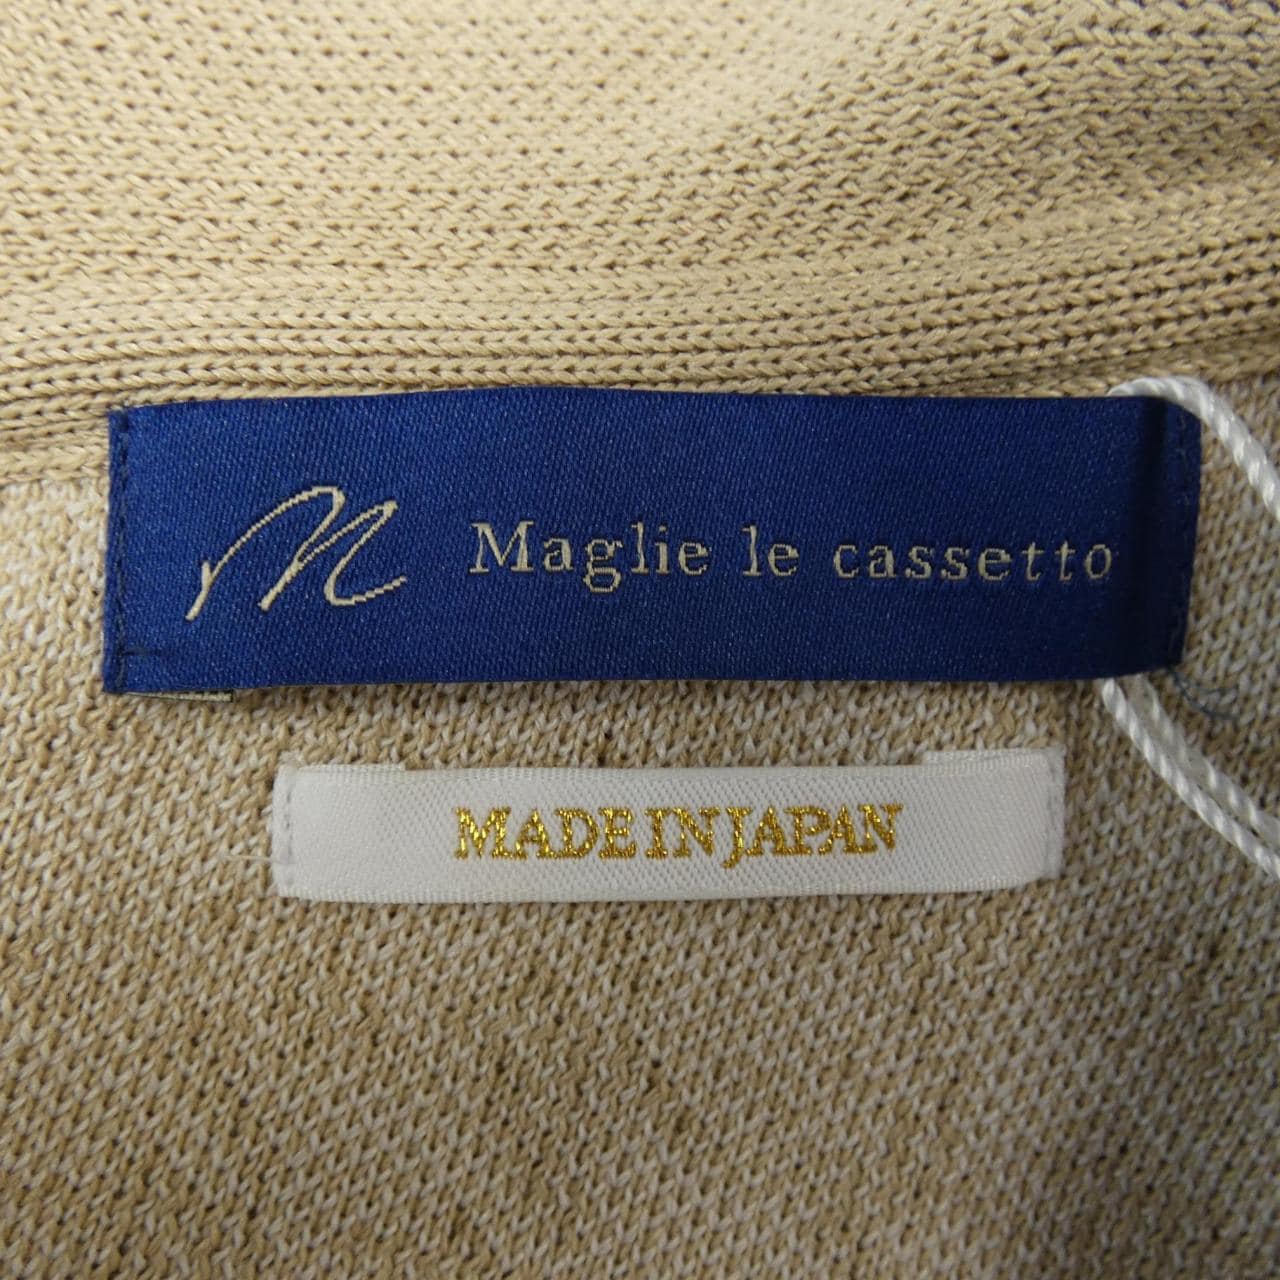 マーリエルカセット maglie le cassetto ワンピース